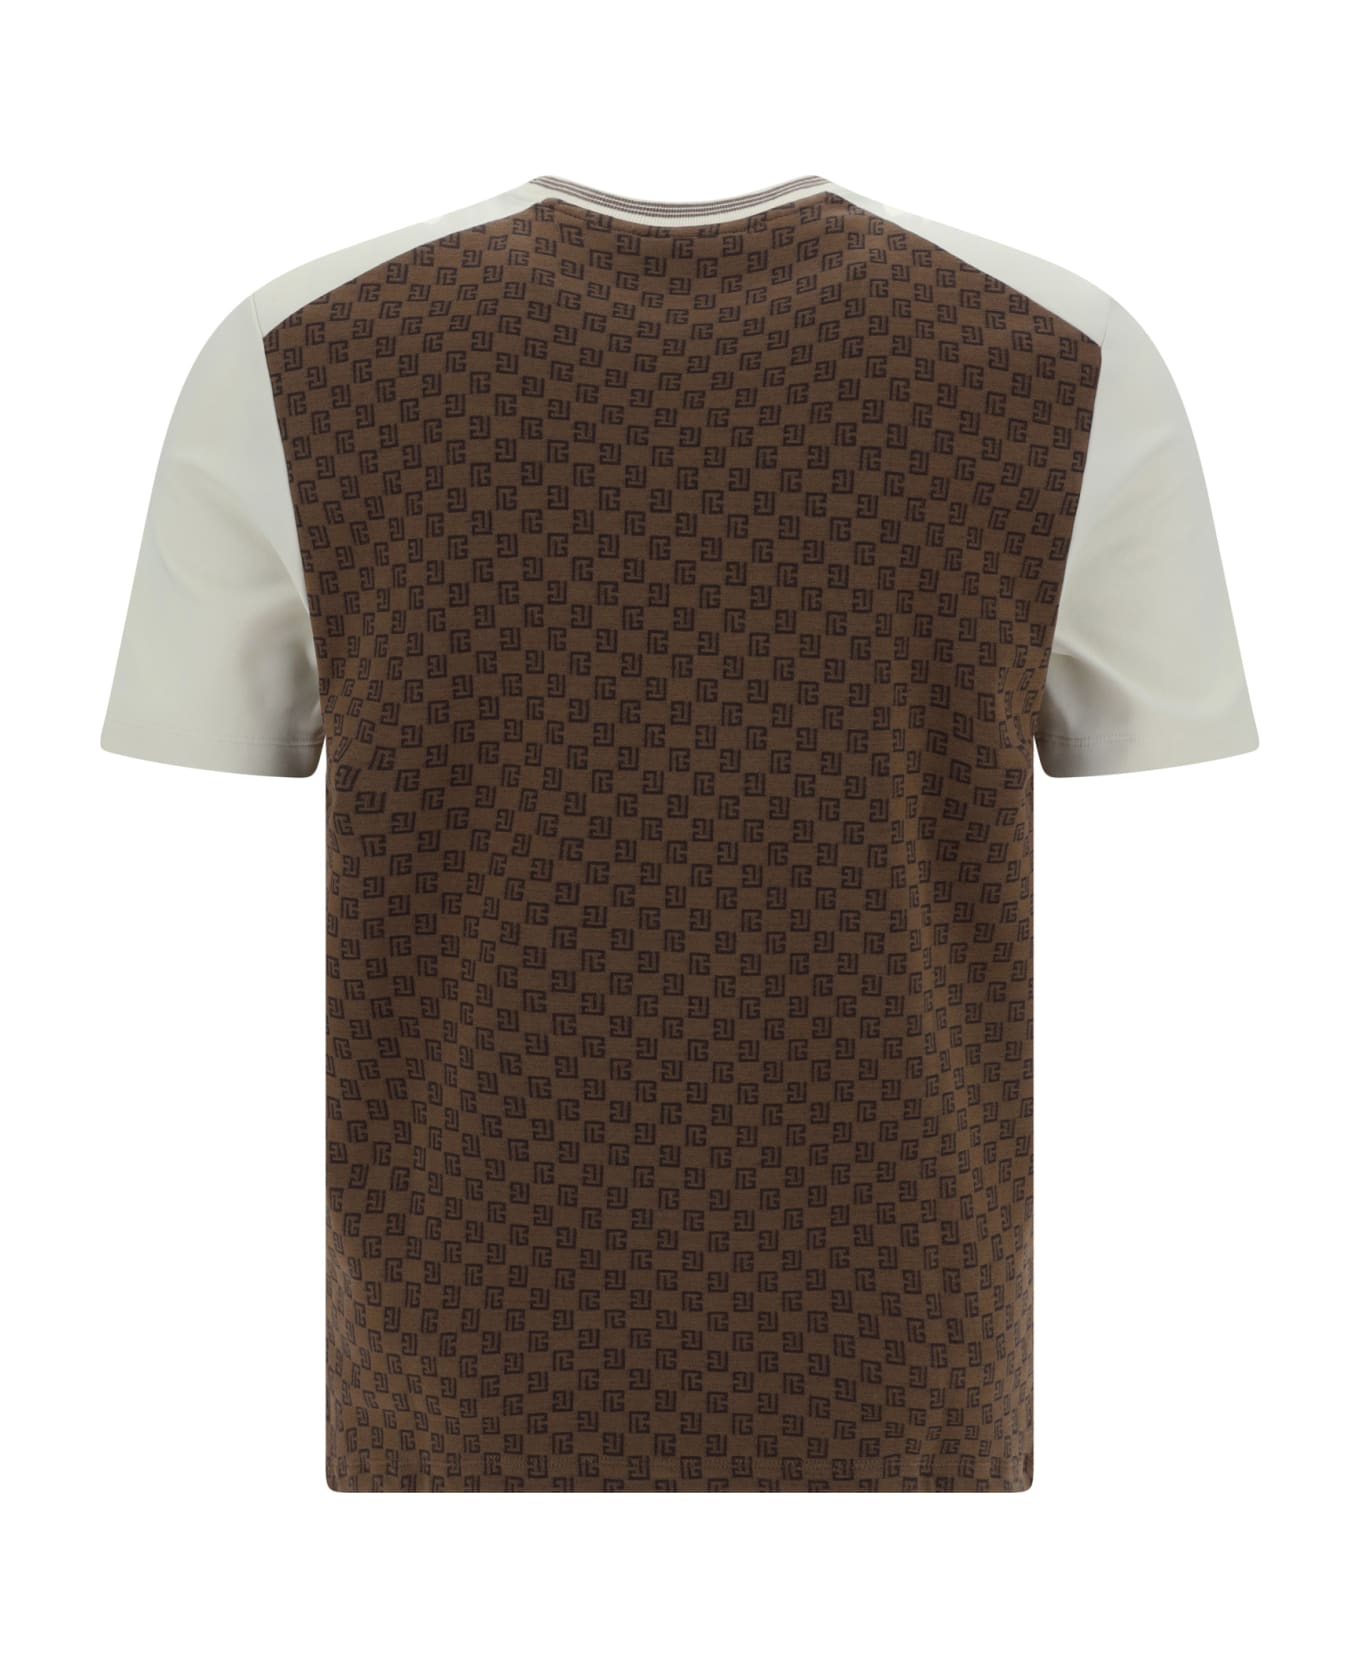 Balmain T-shirt - Marron/marron foncè/creme シャツ